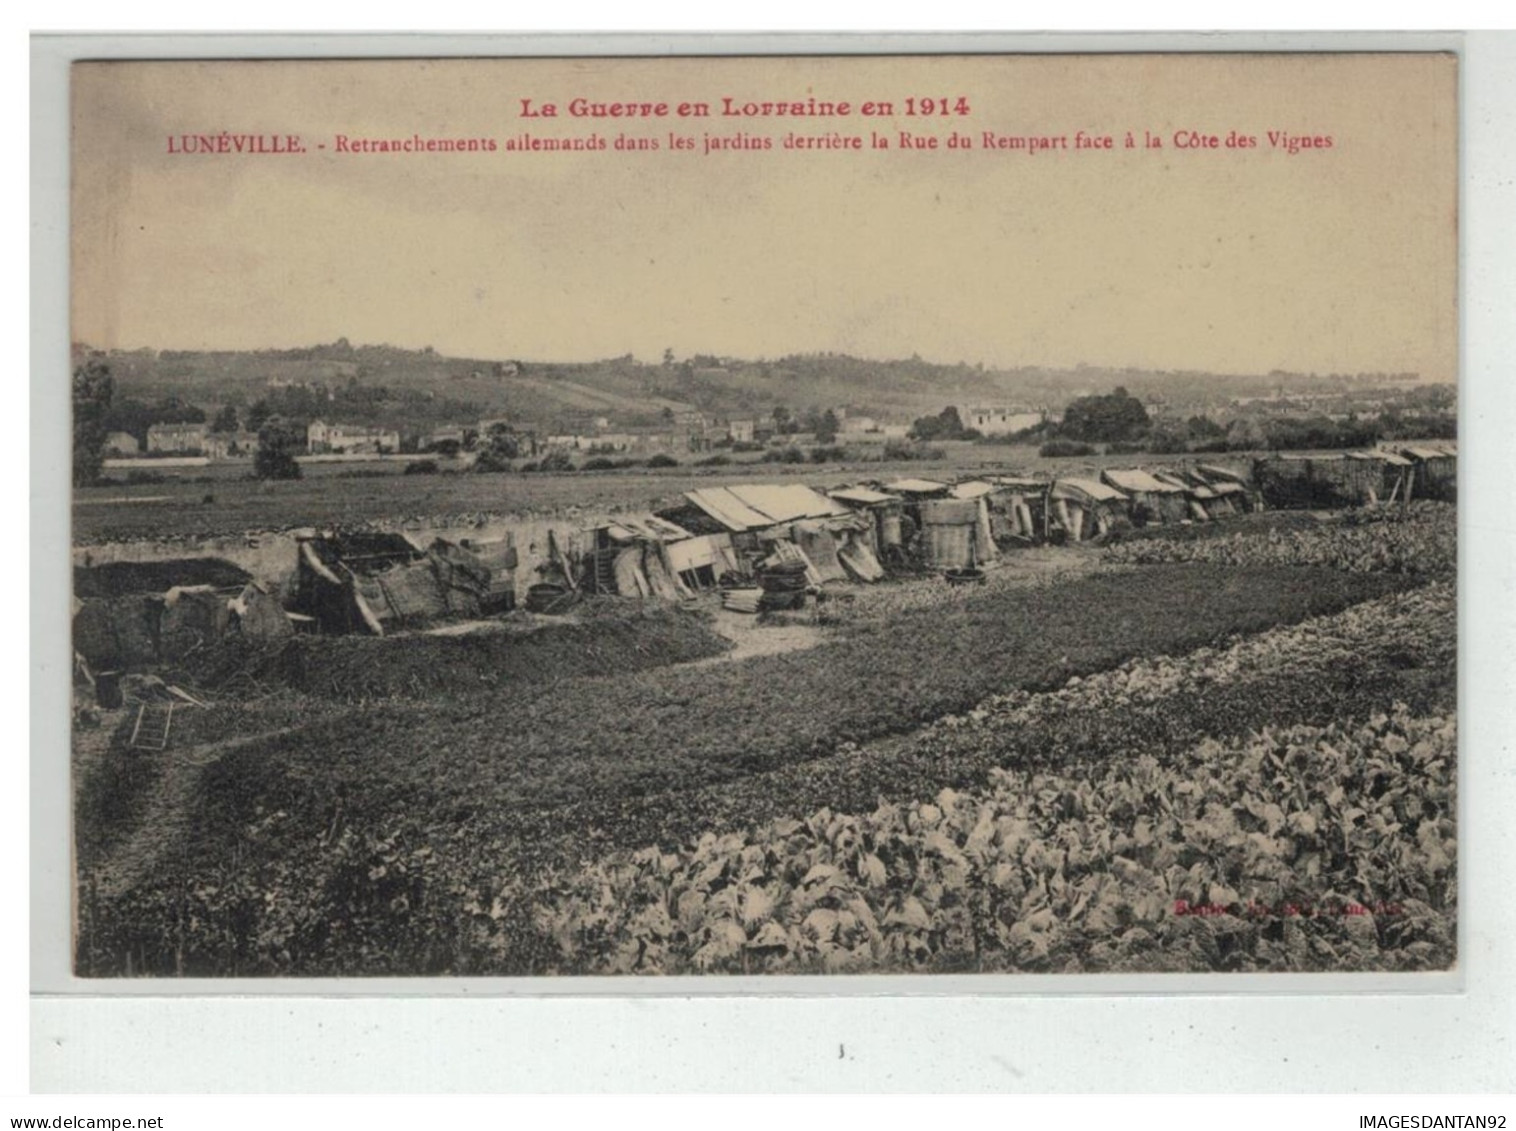 54 LUNEVILLE RETRANCHEMENT DES ALLEMANDS RUE DU REMPART COTE VIGNES GUERRE LORRAINE 1914 - Luneville